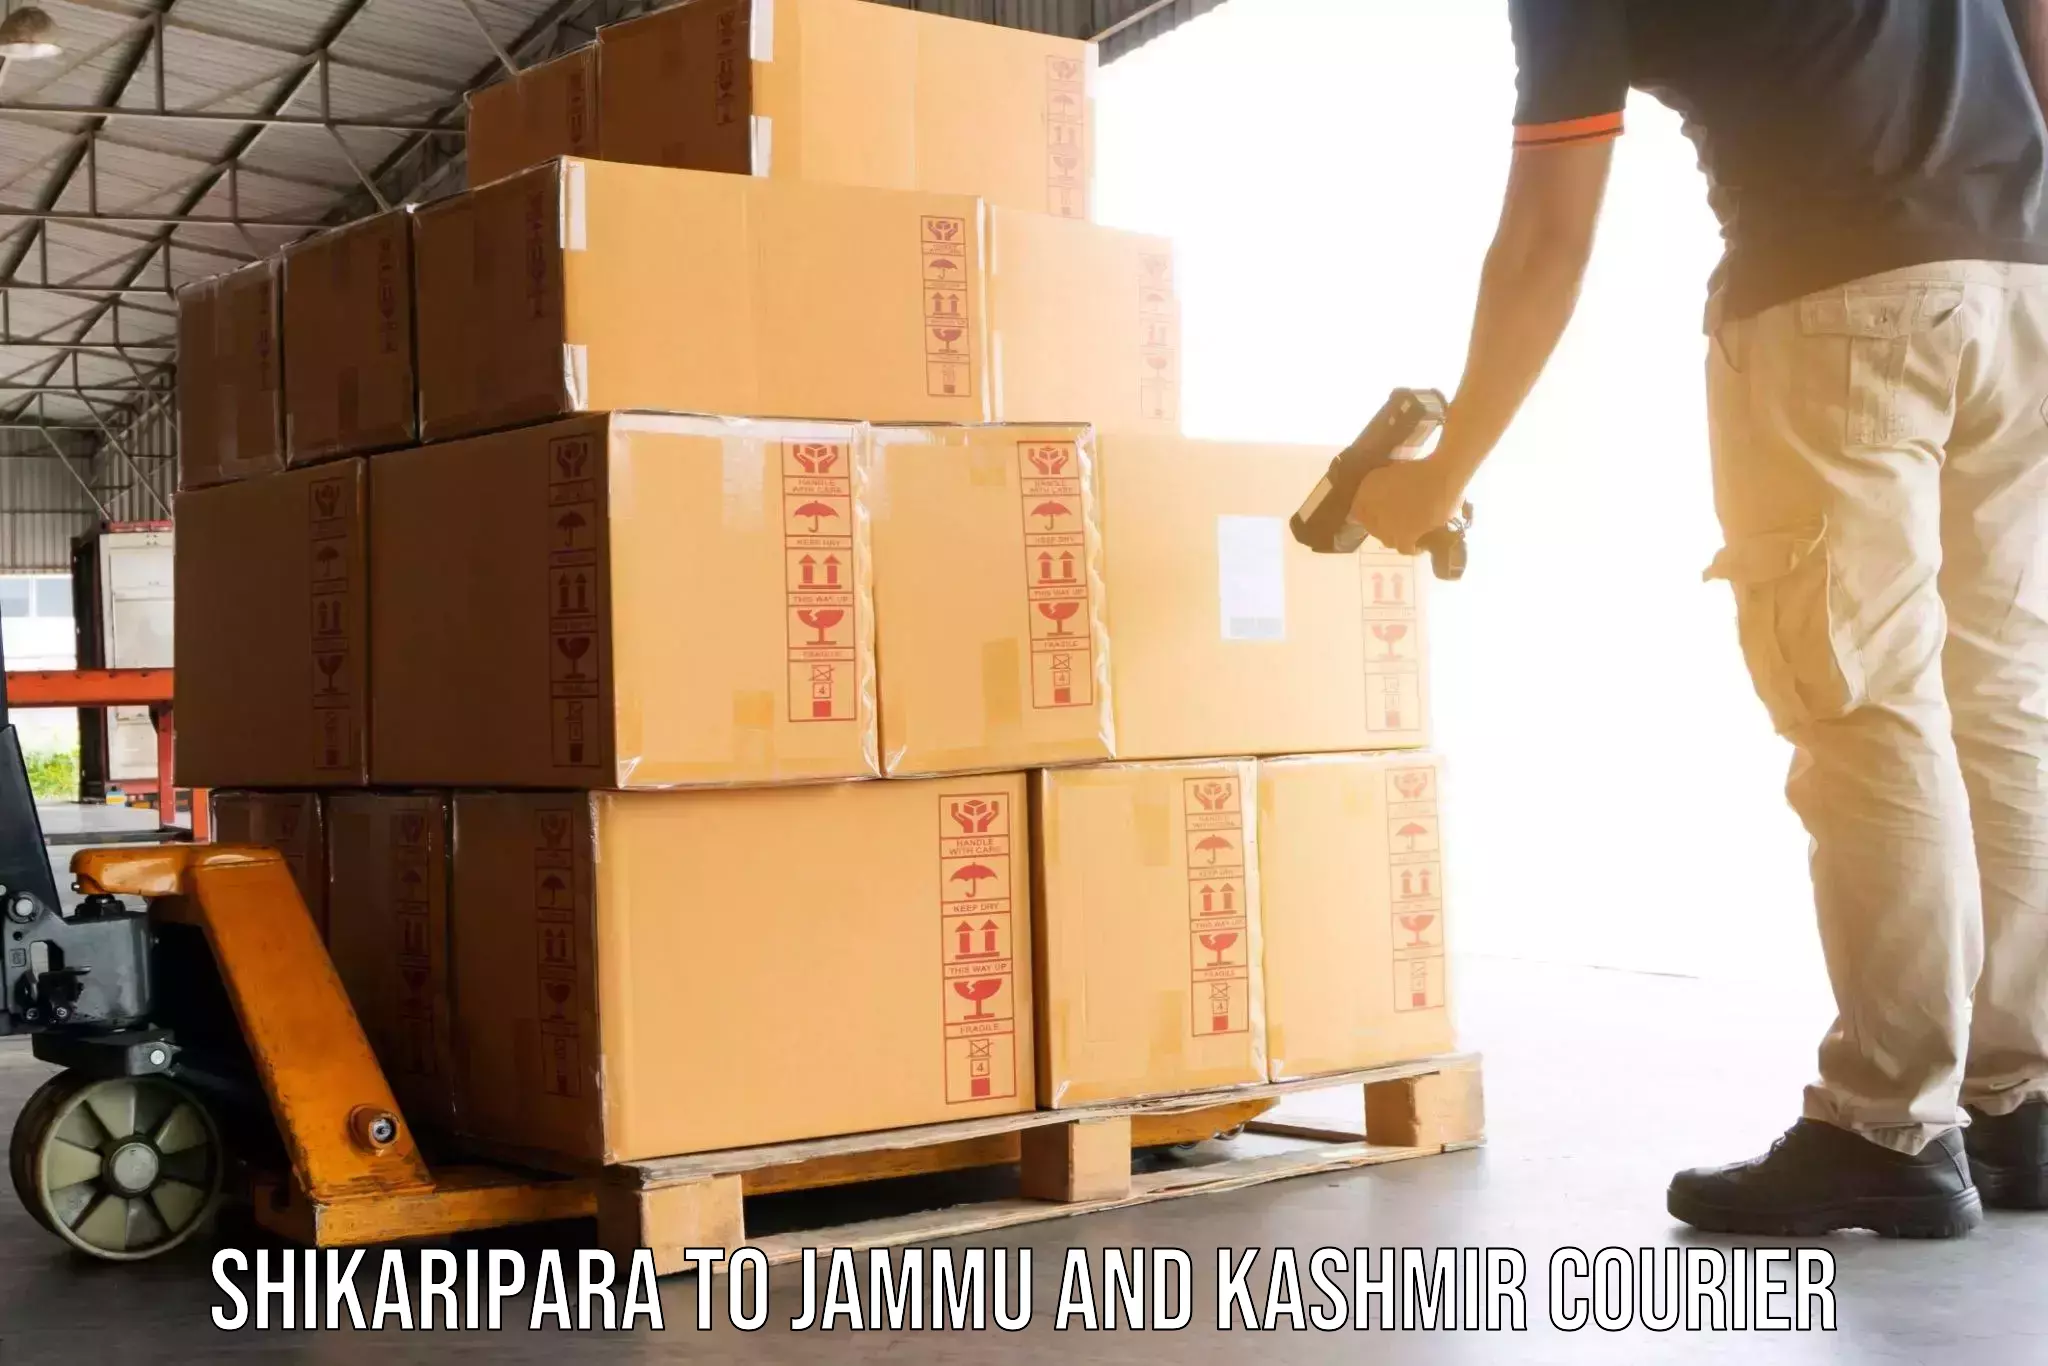 Moving and packing experts Shikaripara to Baramulla